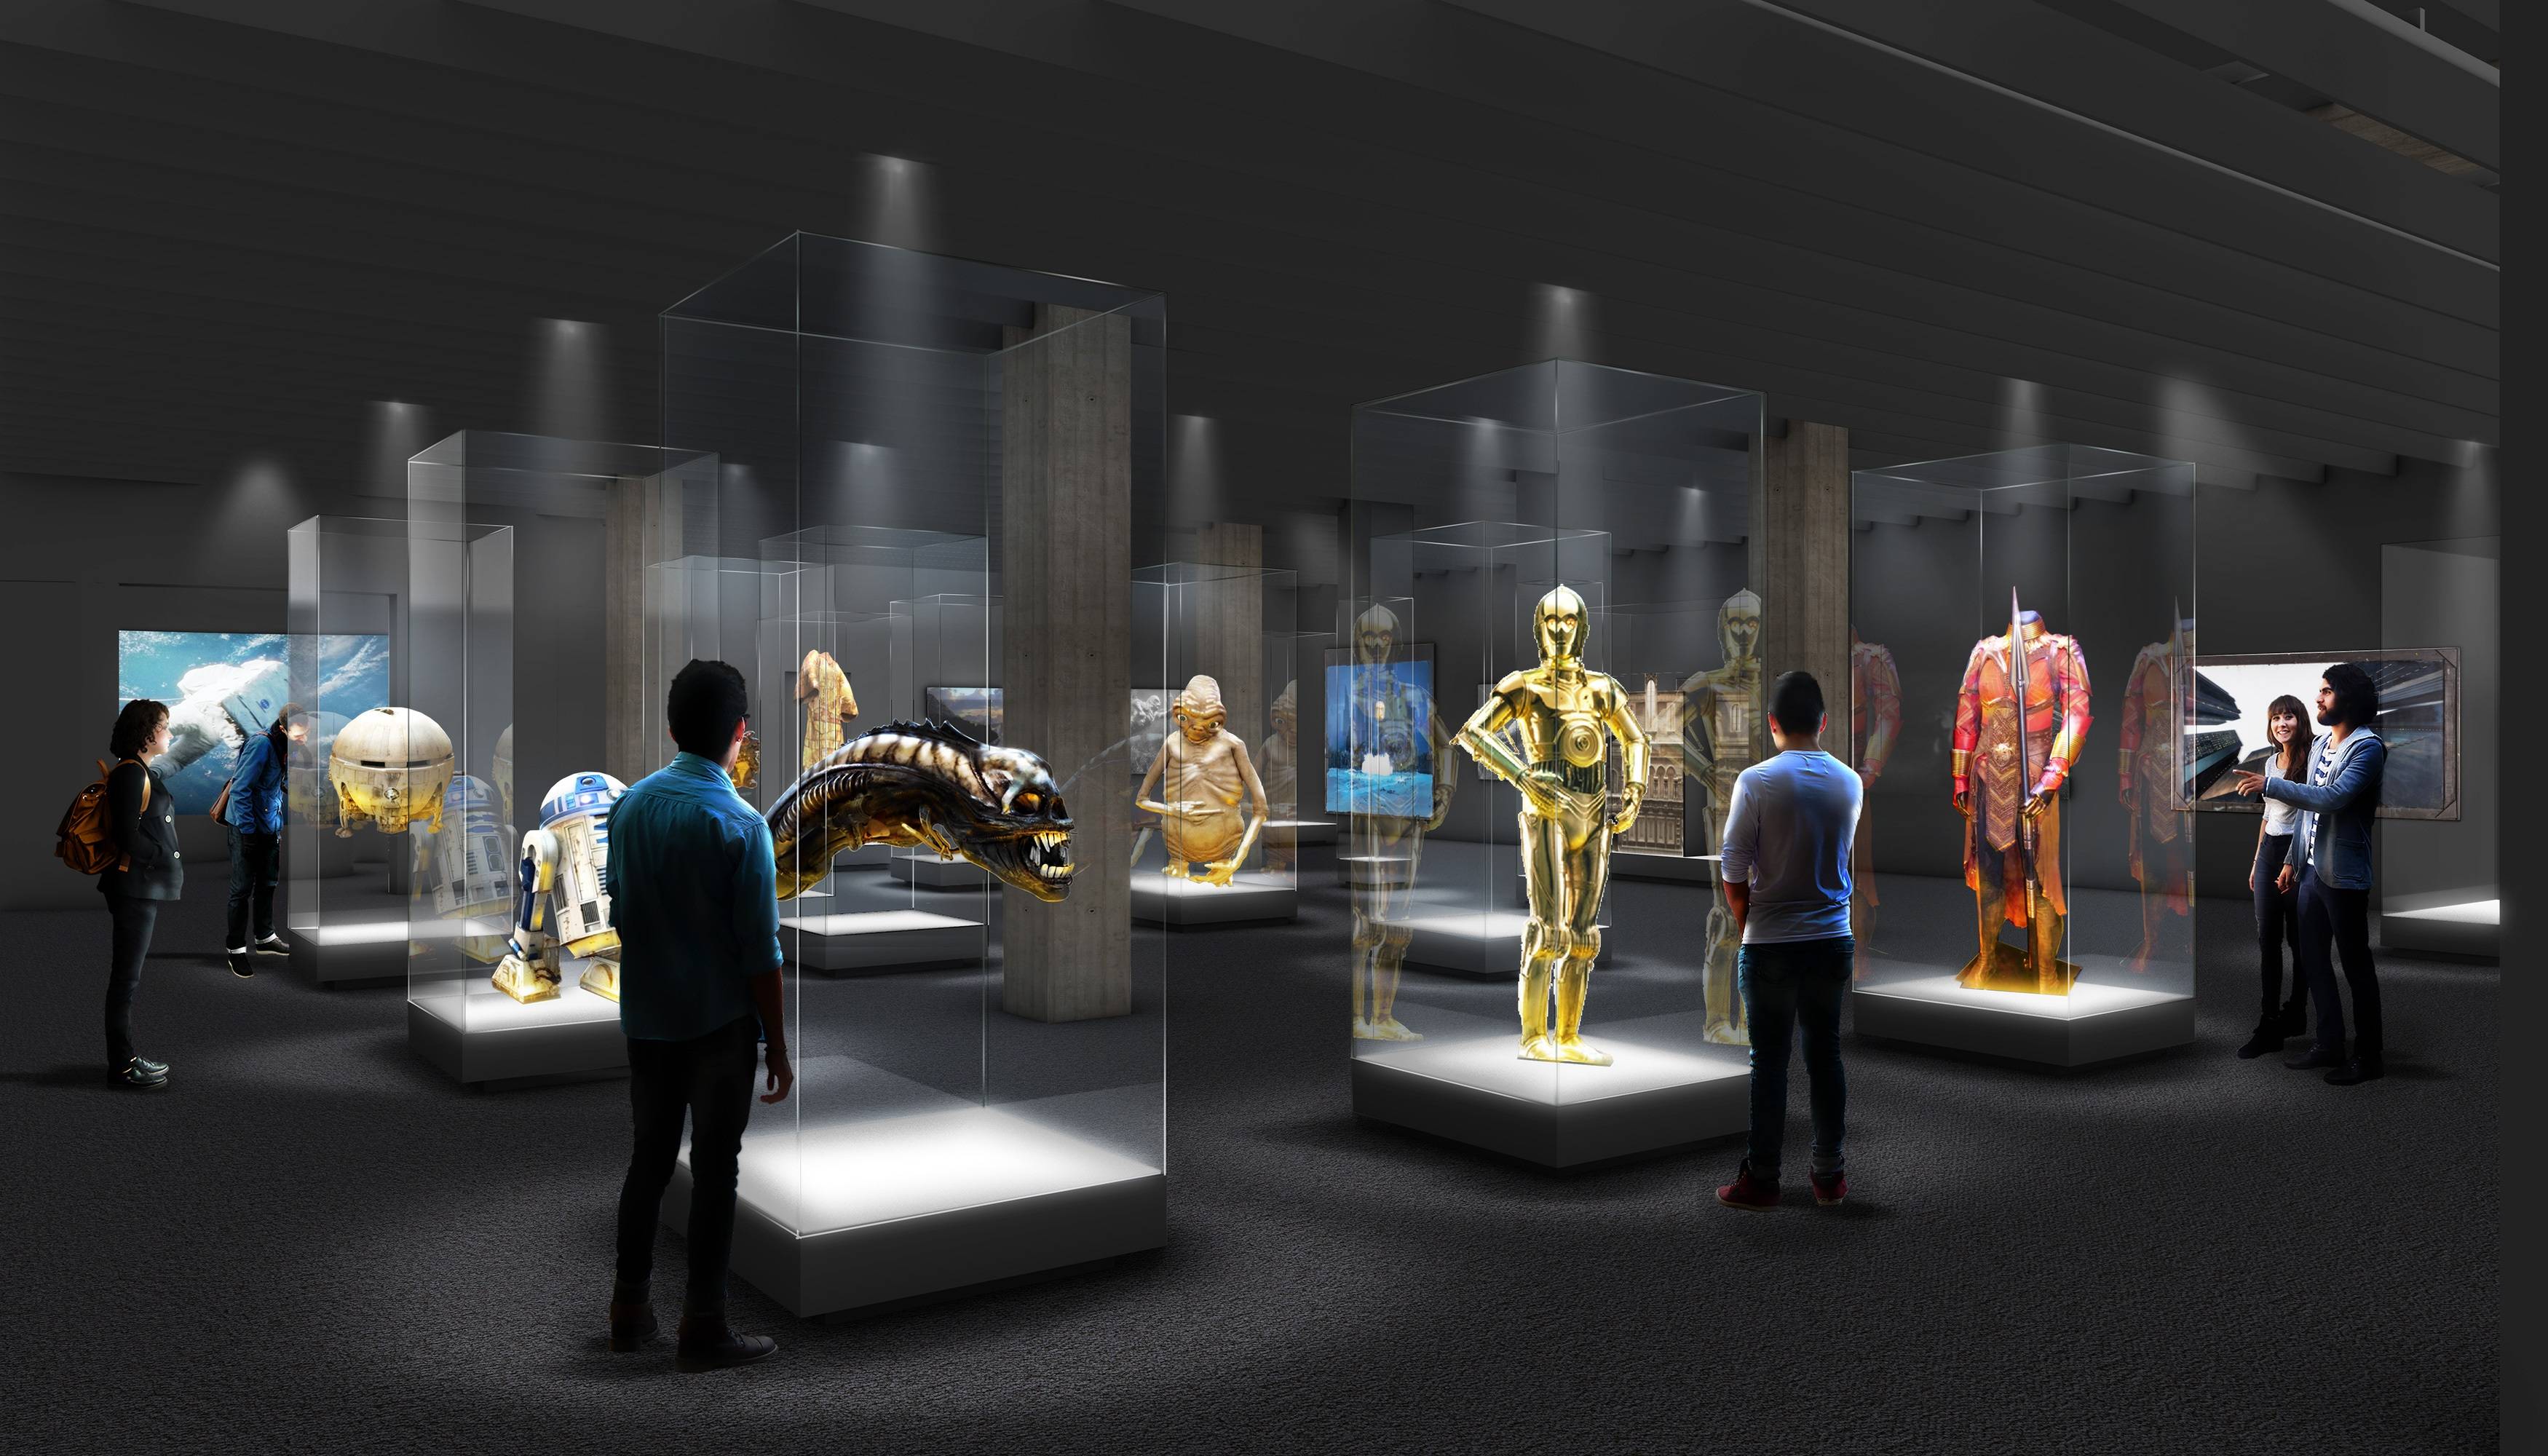 这是一张展览馆内部的图片，展示了多个科幻电影角色的雕塑，包括金色和红色的机器人。参观者正在观看和拍照。